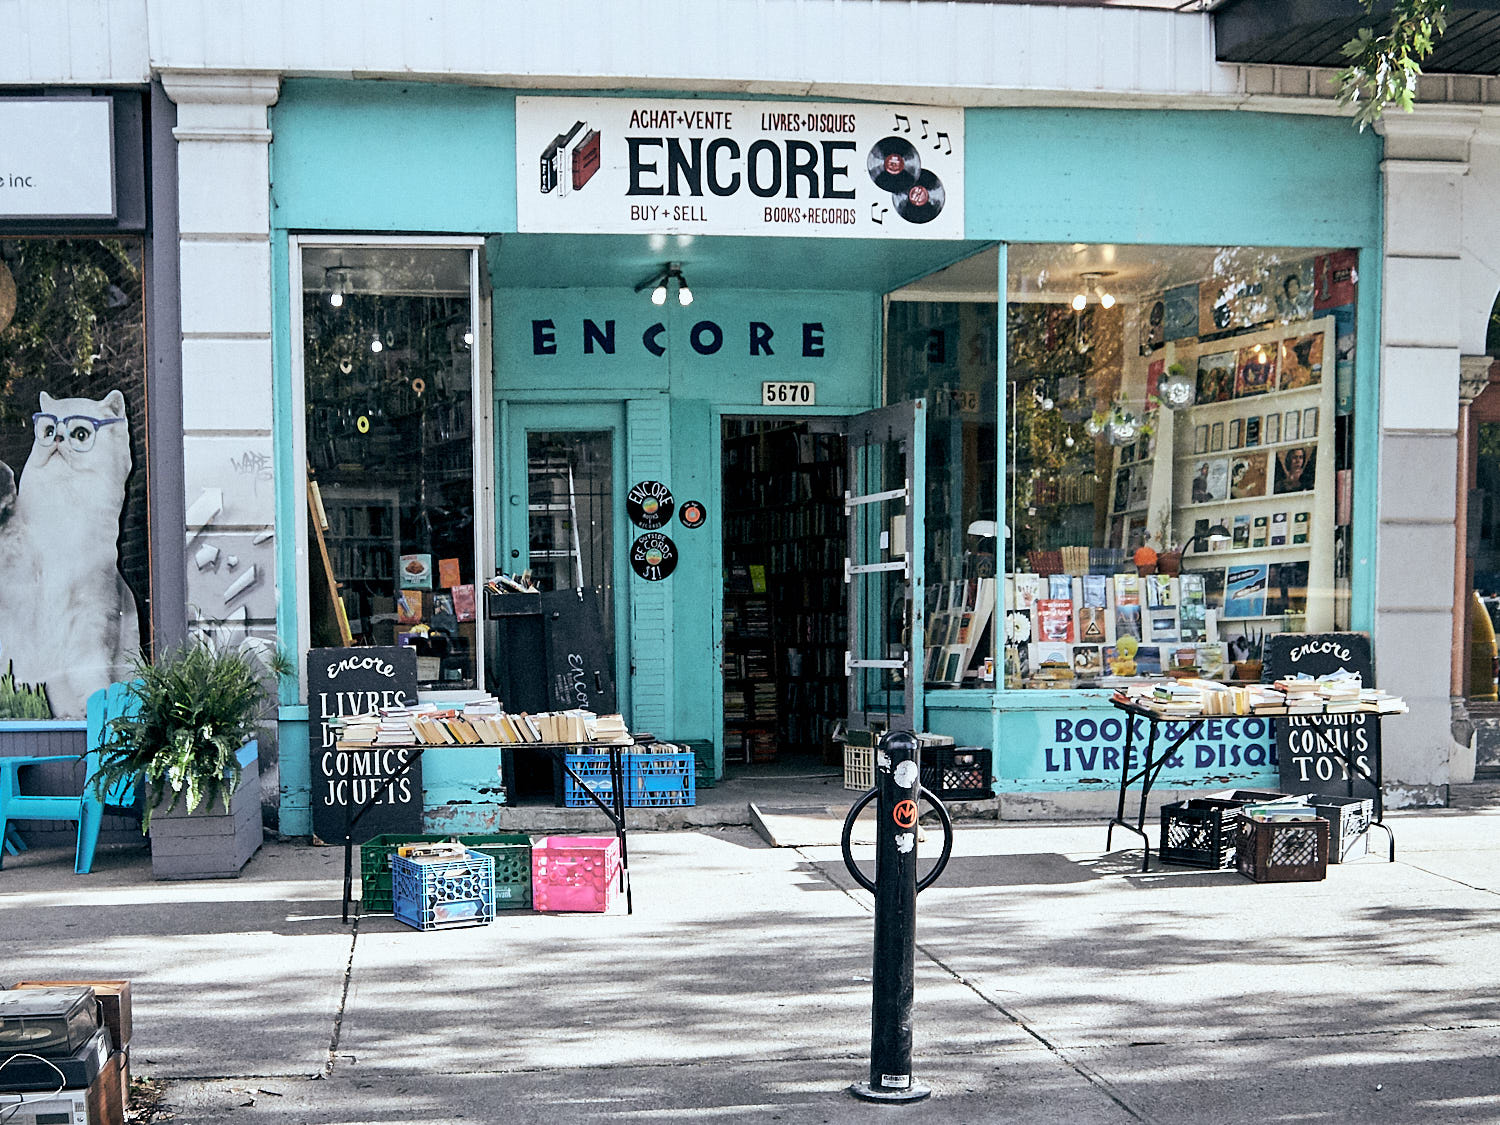 Encore Books & Records